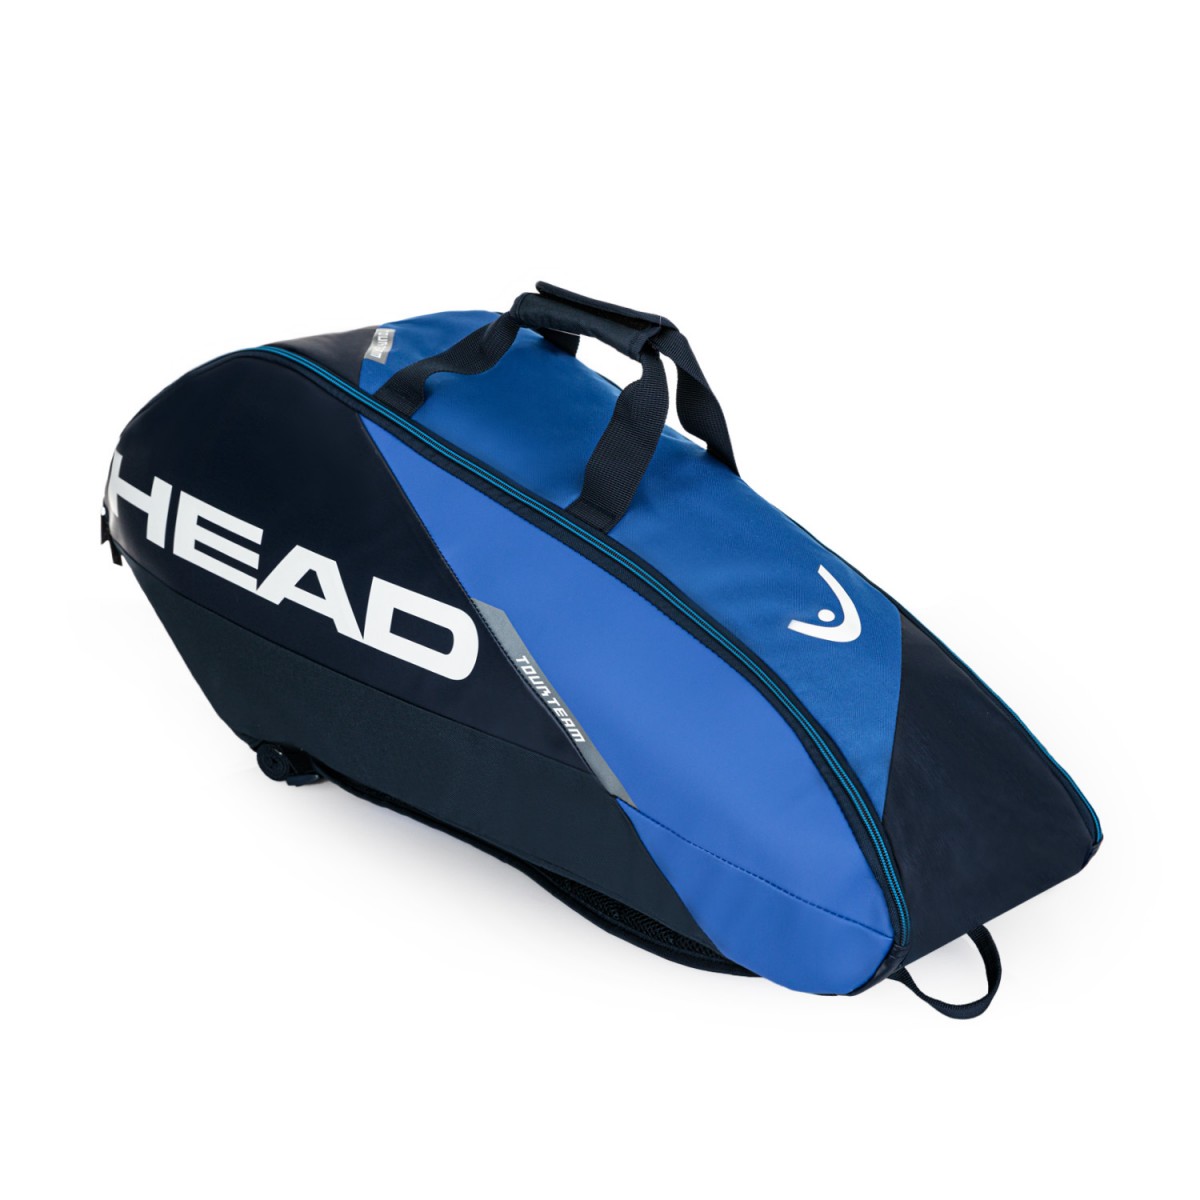 Теннисная сумка Head Tour Team 6R blue/navy